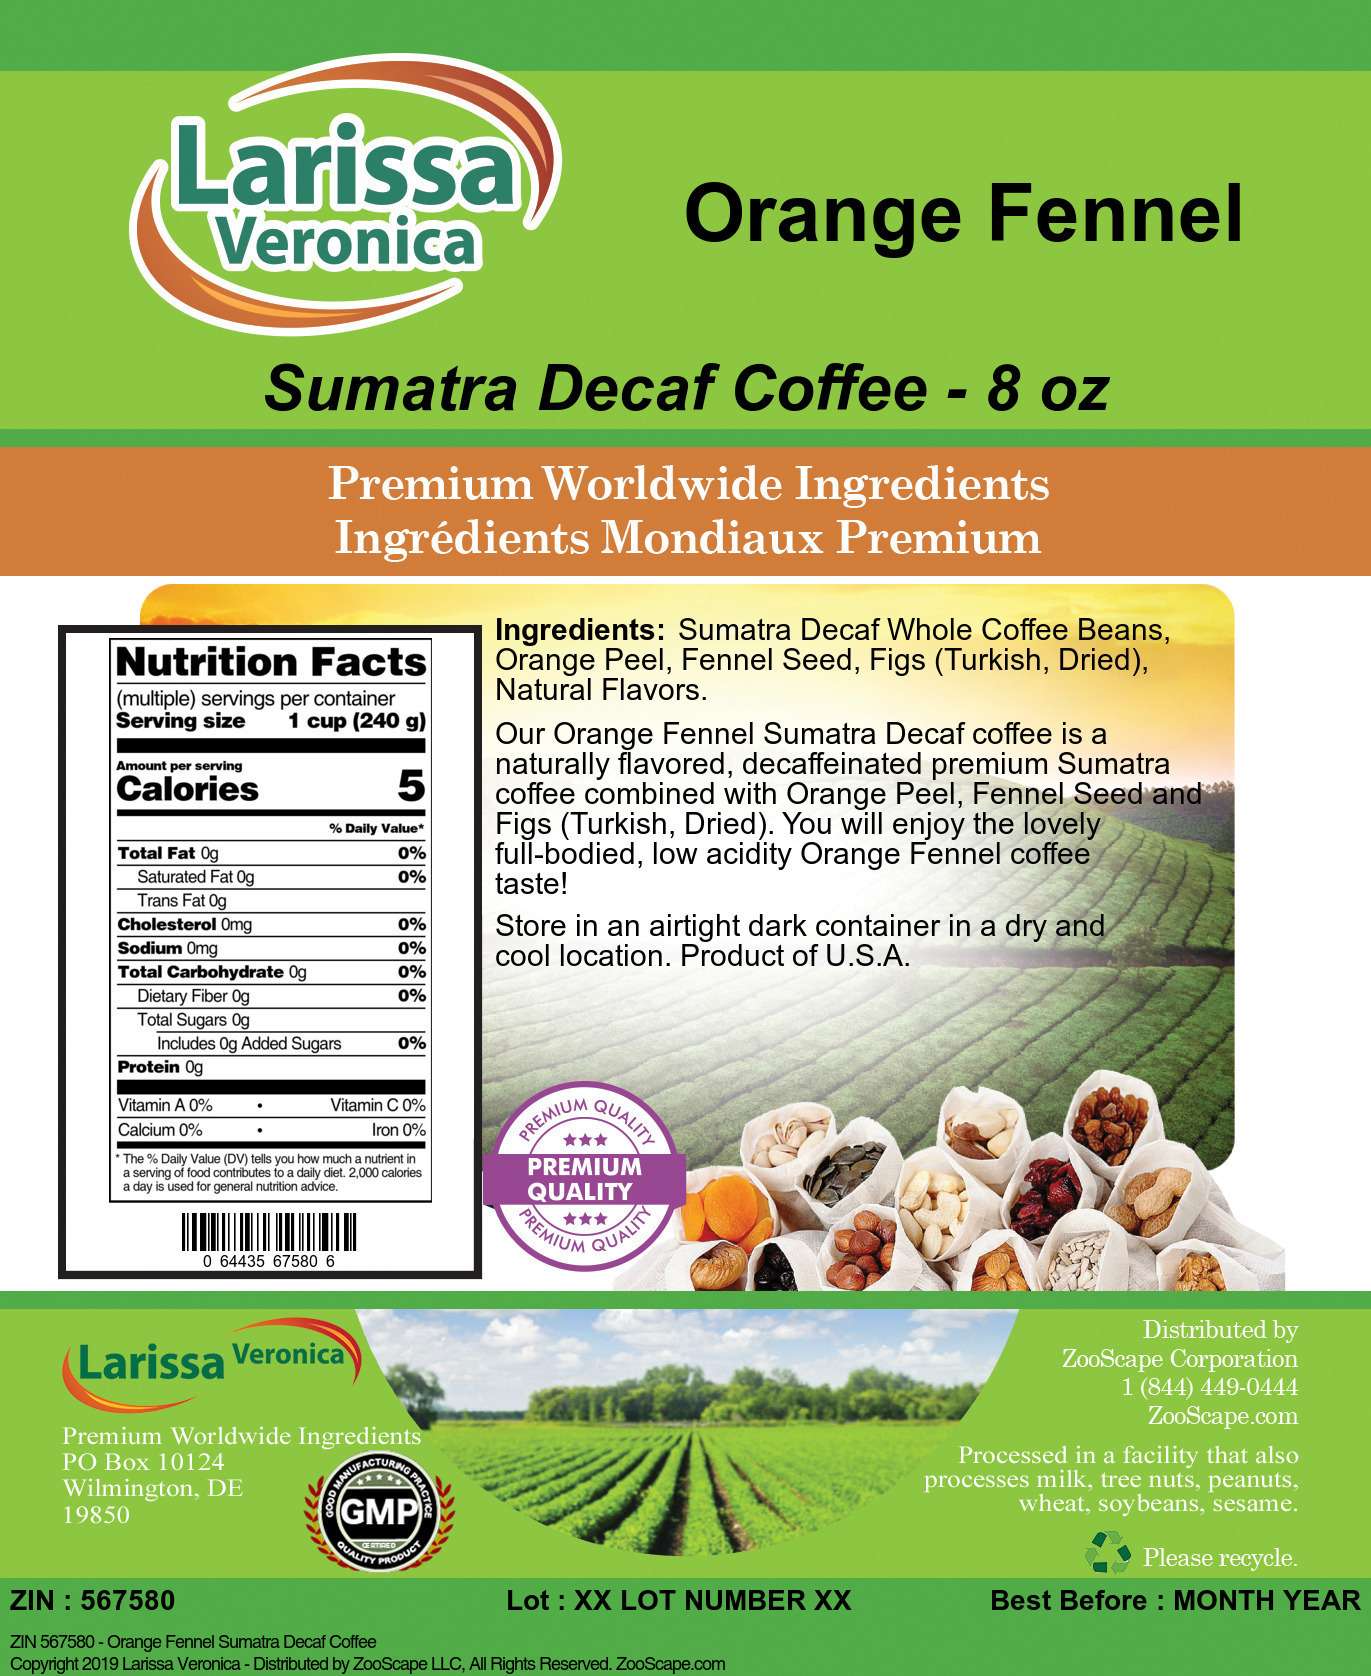 Orange Fennel Sumatra Decaf Coffee - Label